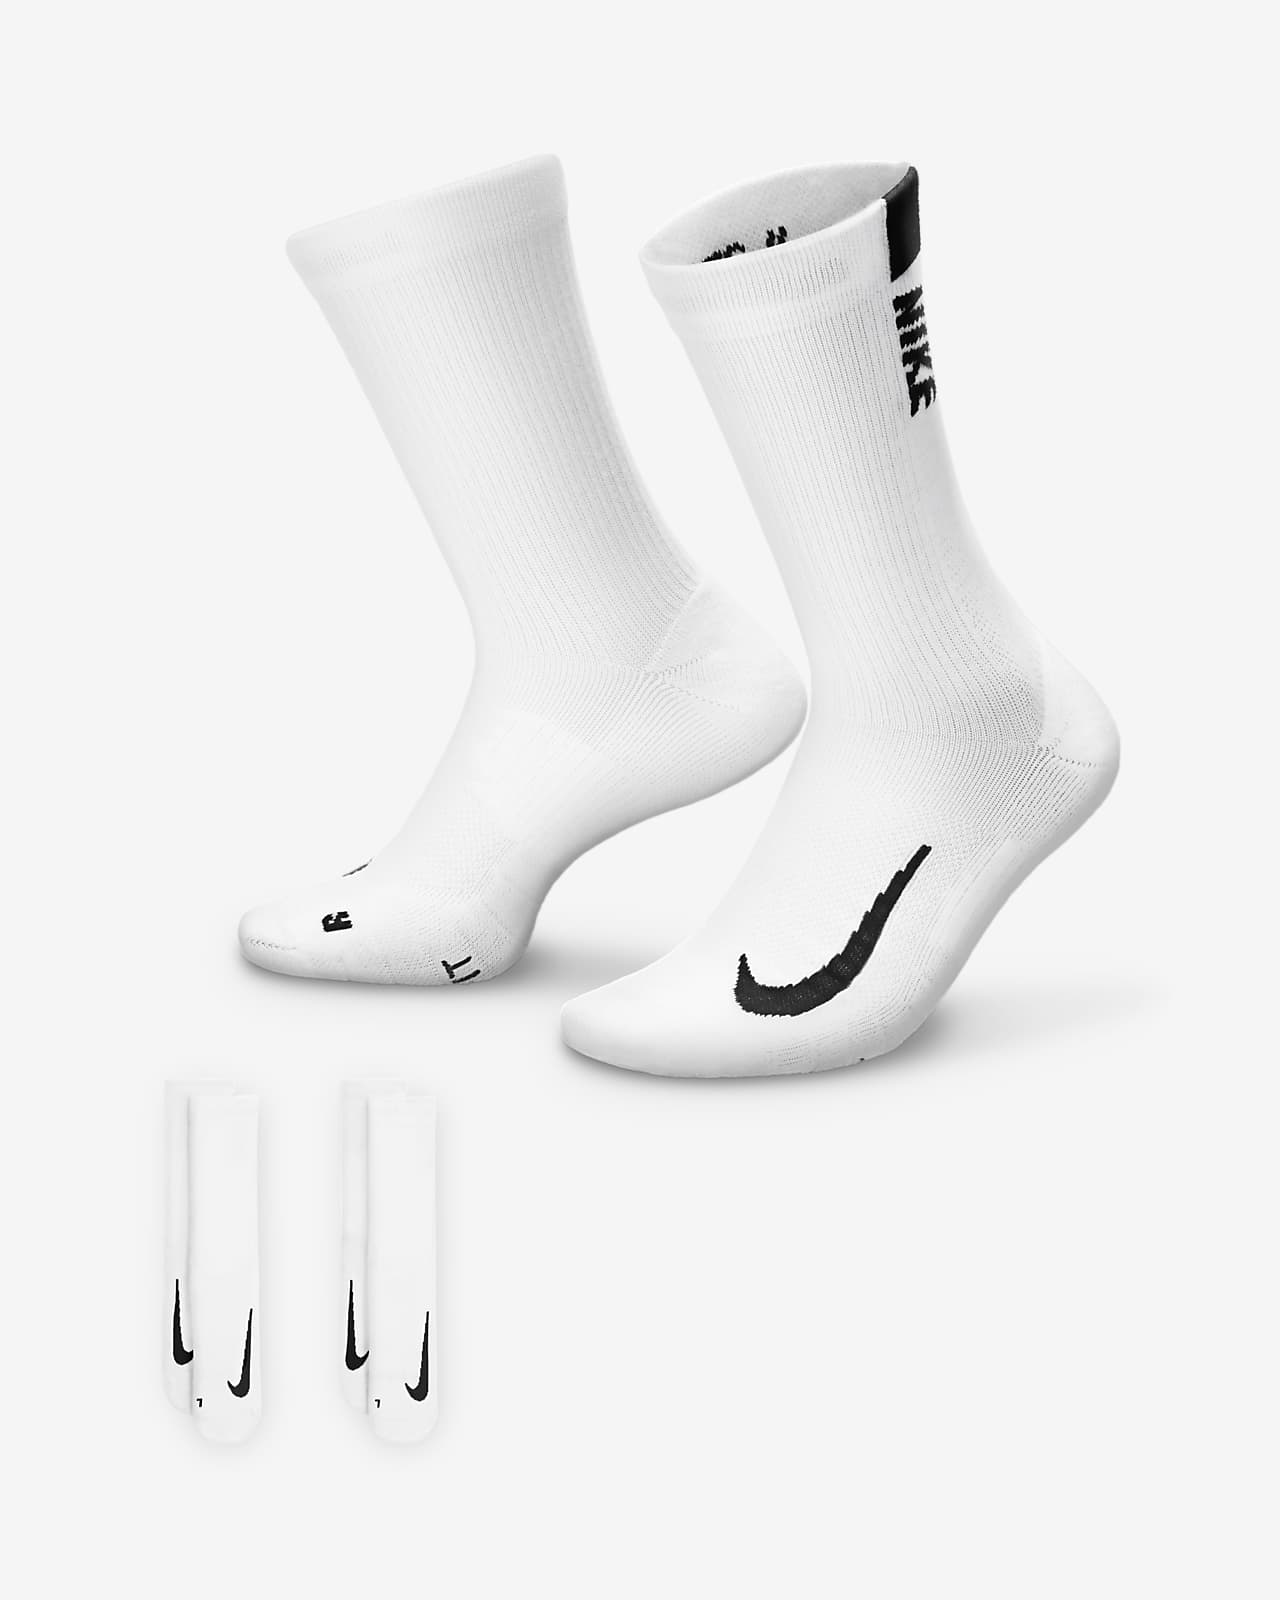 Chaussettes mi-mollet Nike Multiplier (2 paires)